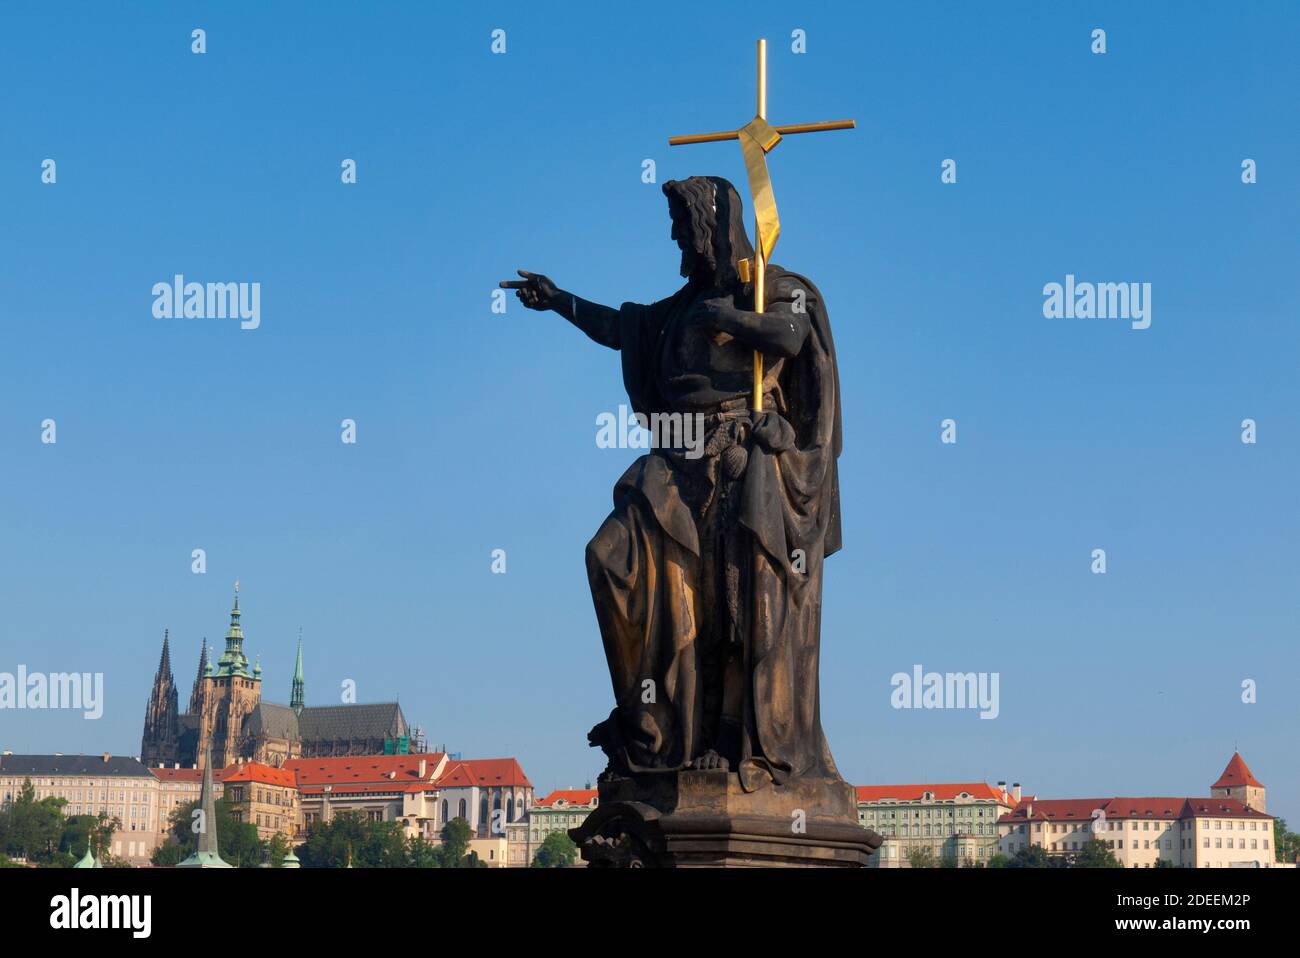 Statuen von religiösen Figuren und Heiligen säumen die Karlsbrücke über die Moldau, Prag, Hauptstadt der Tschechischen Republik. Hinter der Prager Burg. Stockfoto